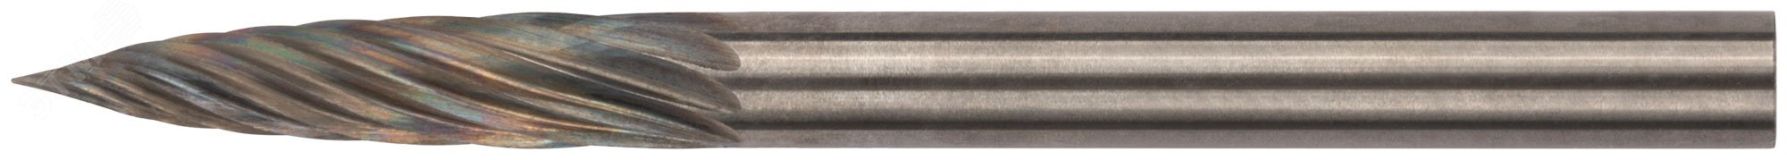 Шарошка карбидная Профи, штифт 3 мм (мини), цилиндрическая с острым наконечником 36584 FIT